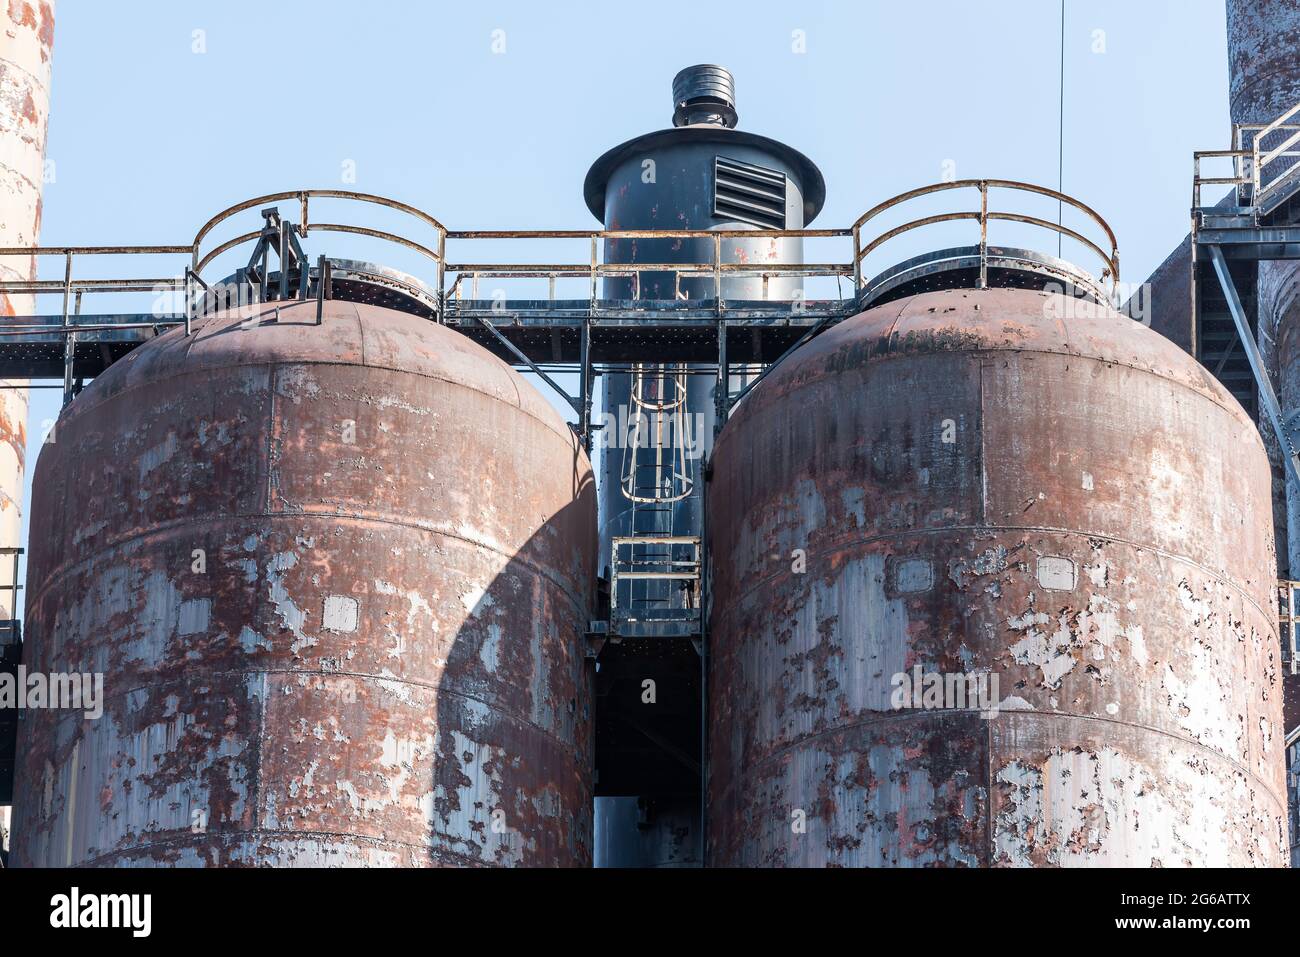 Zwei große Stahltanks, verlassen, in einer alten Stahlfabrik in Pennsylvania. Stockfoto